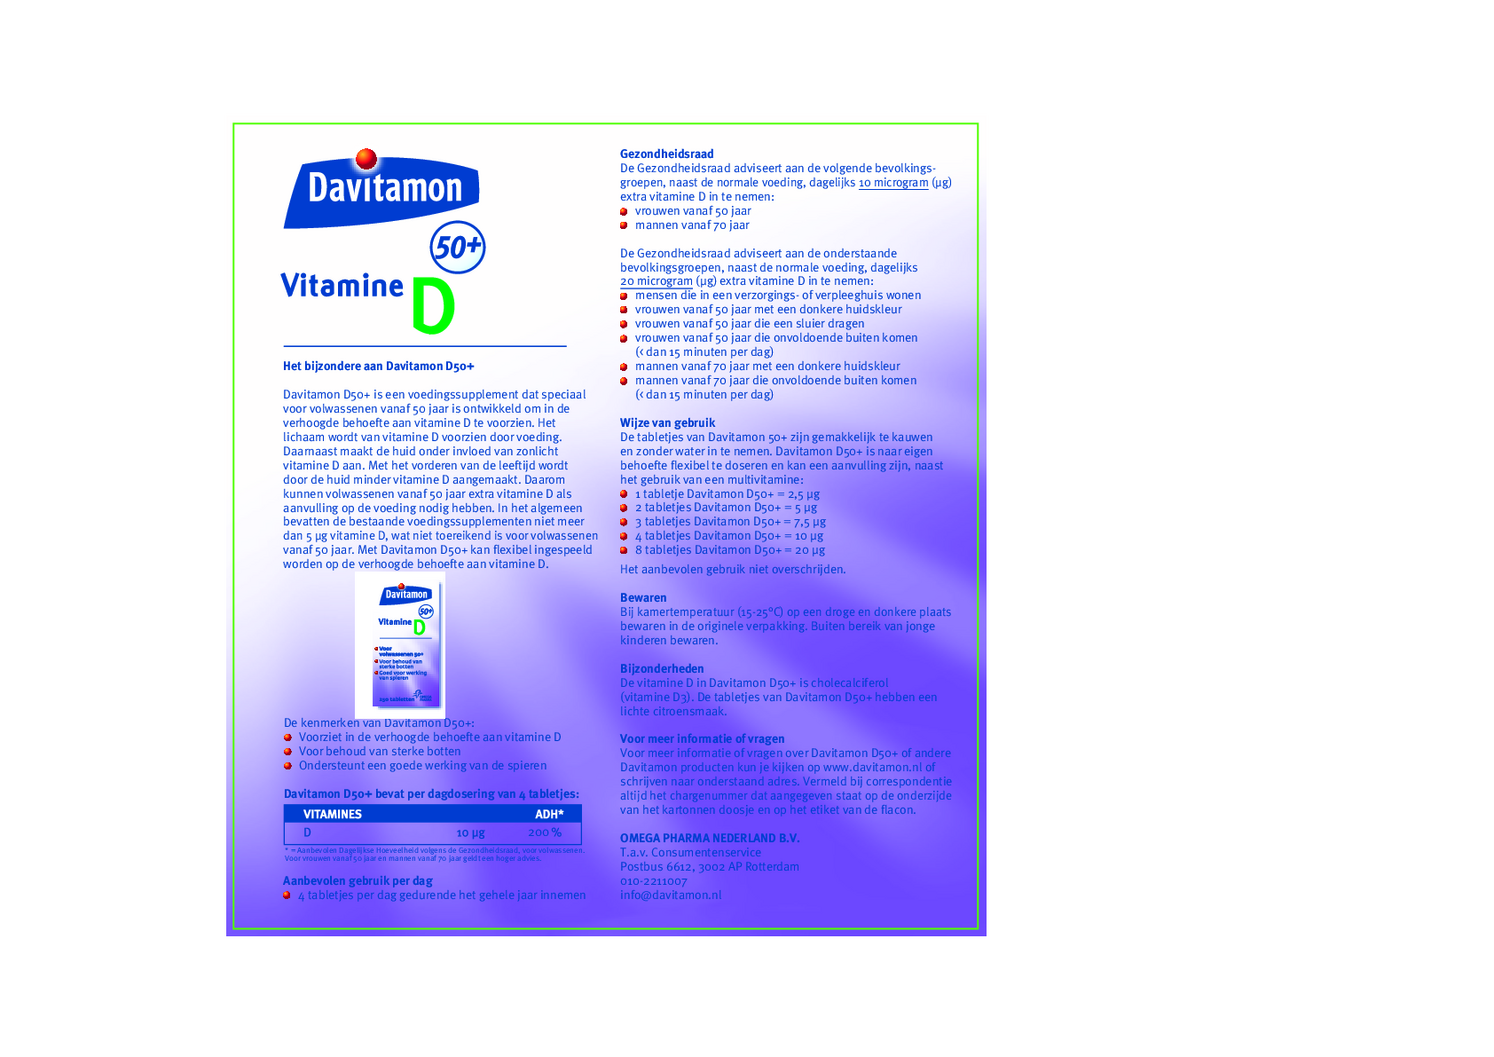 Vitamine D 50+ Tabletten afbeelding van document #1, gebruiksaanwijzing